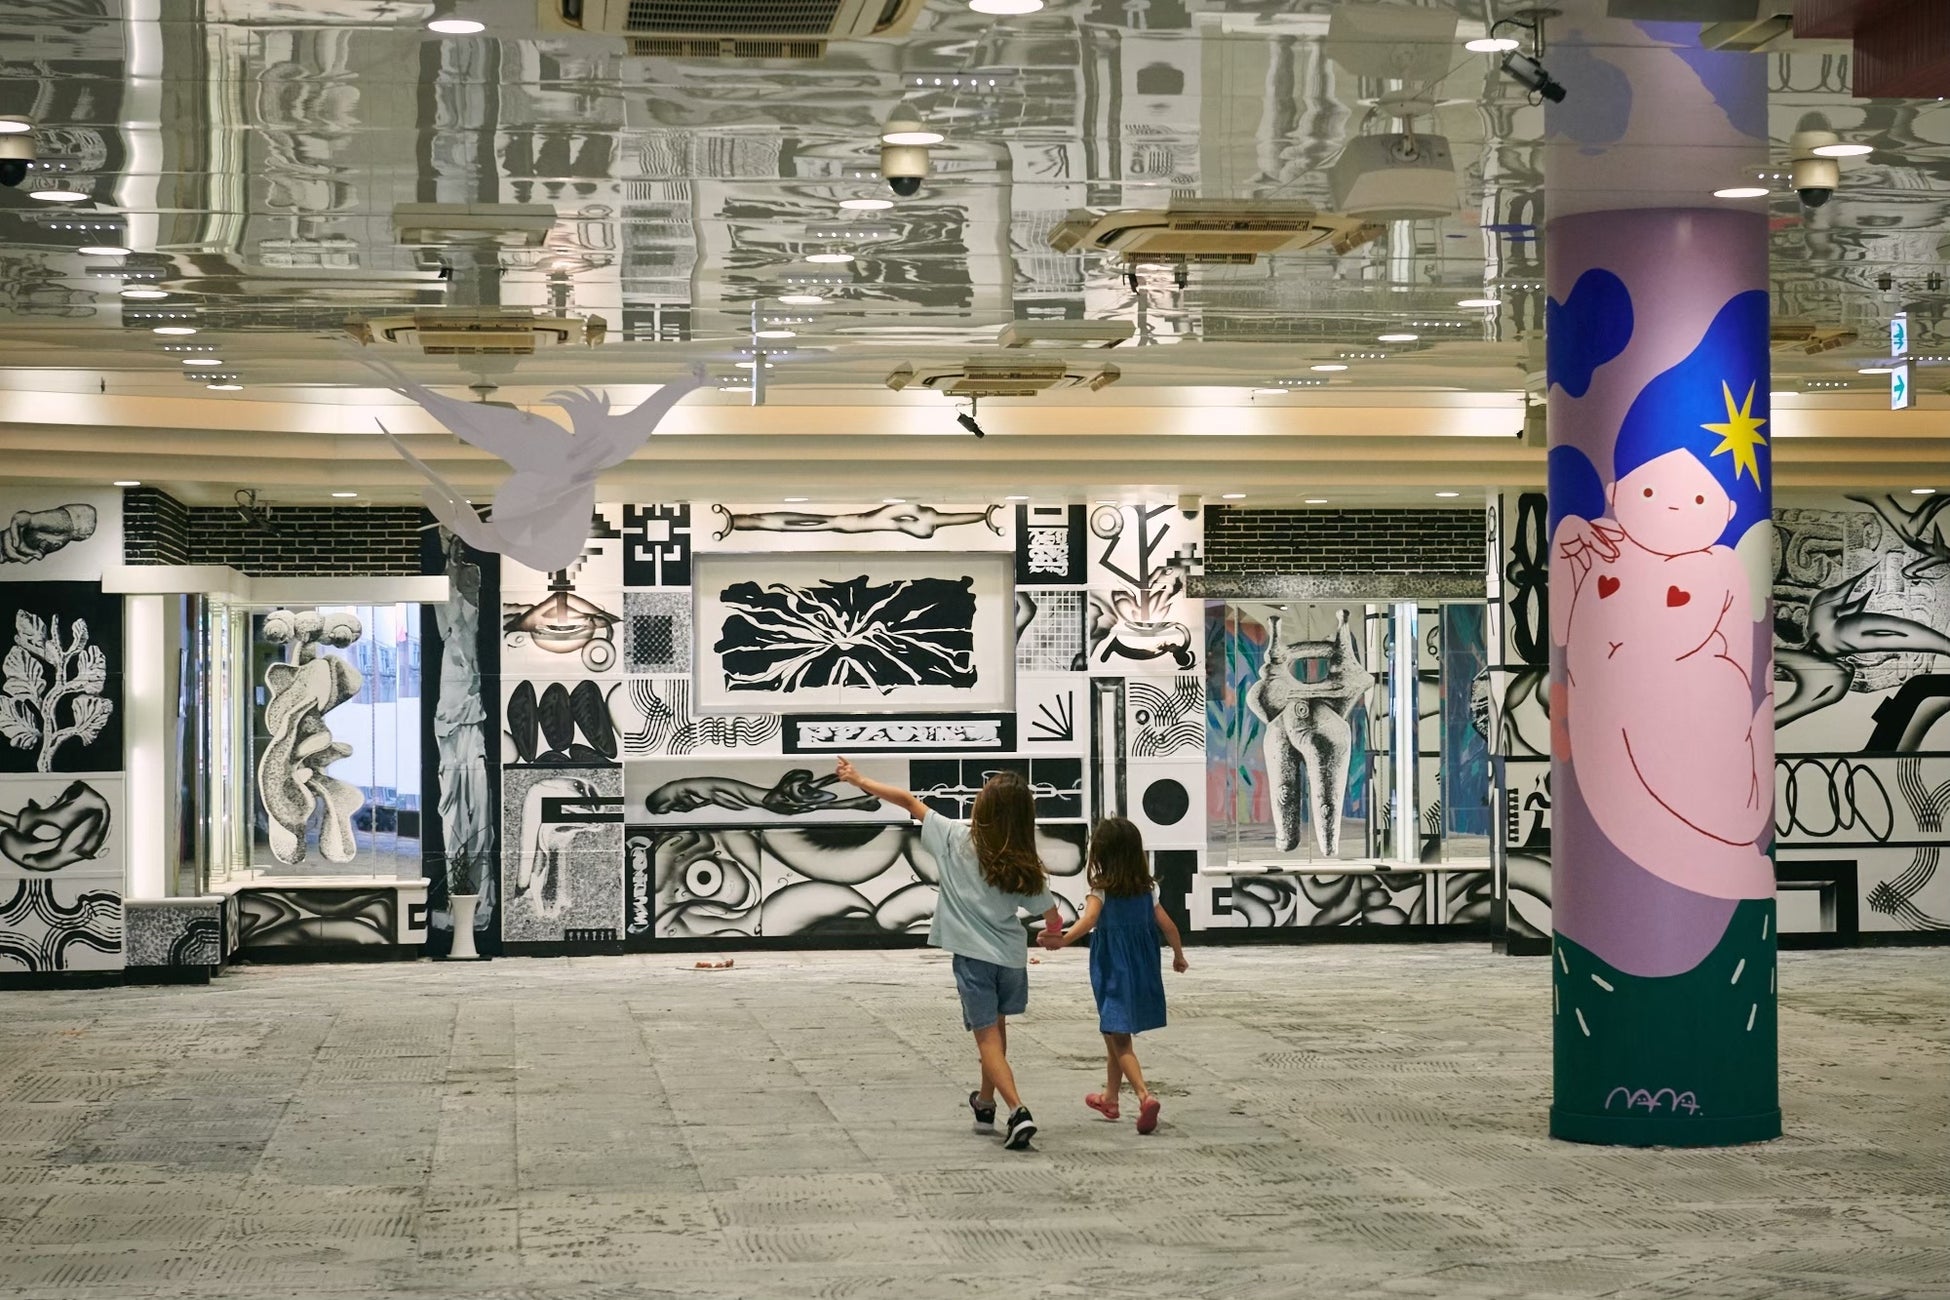 【地域活性×壁画アート】遊休不動産をミューラル（壁画）アートで別空間に生まれ変わらせる。不動産の社会課題をストリートアーティストが解決